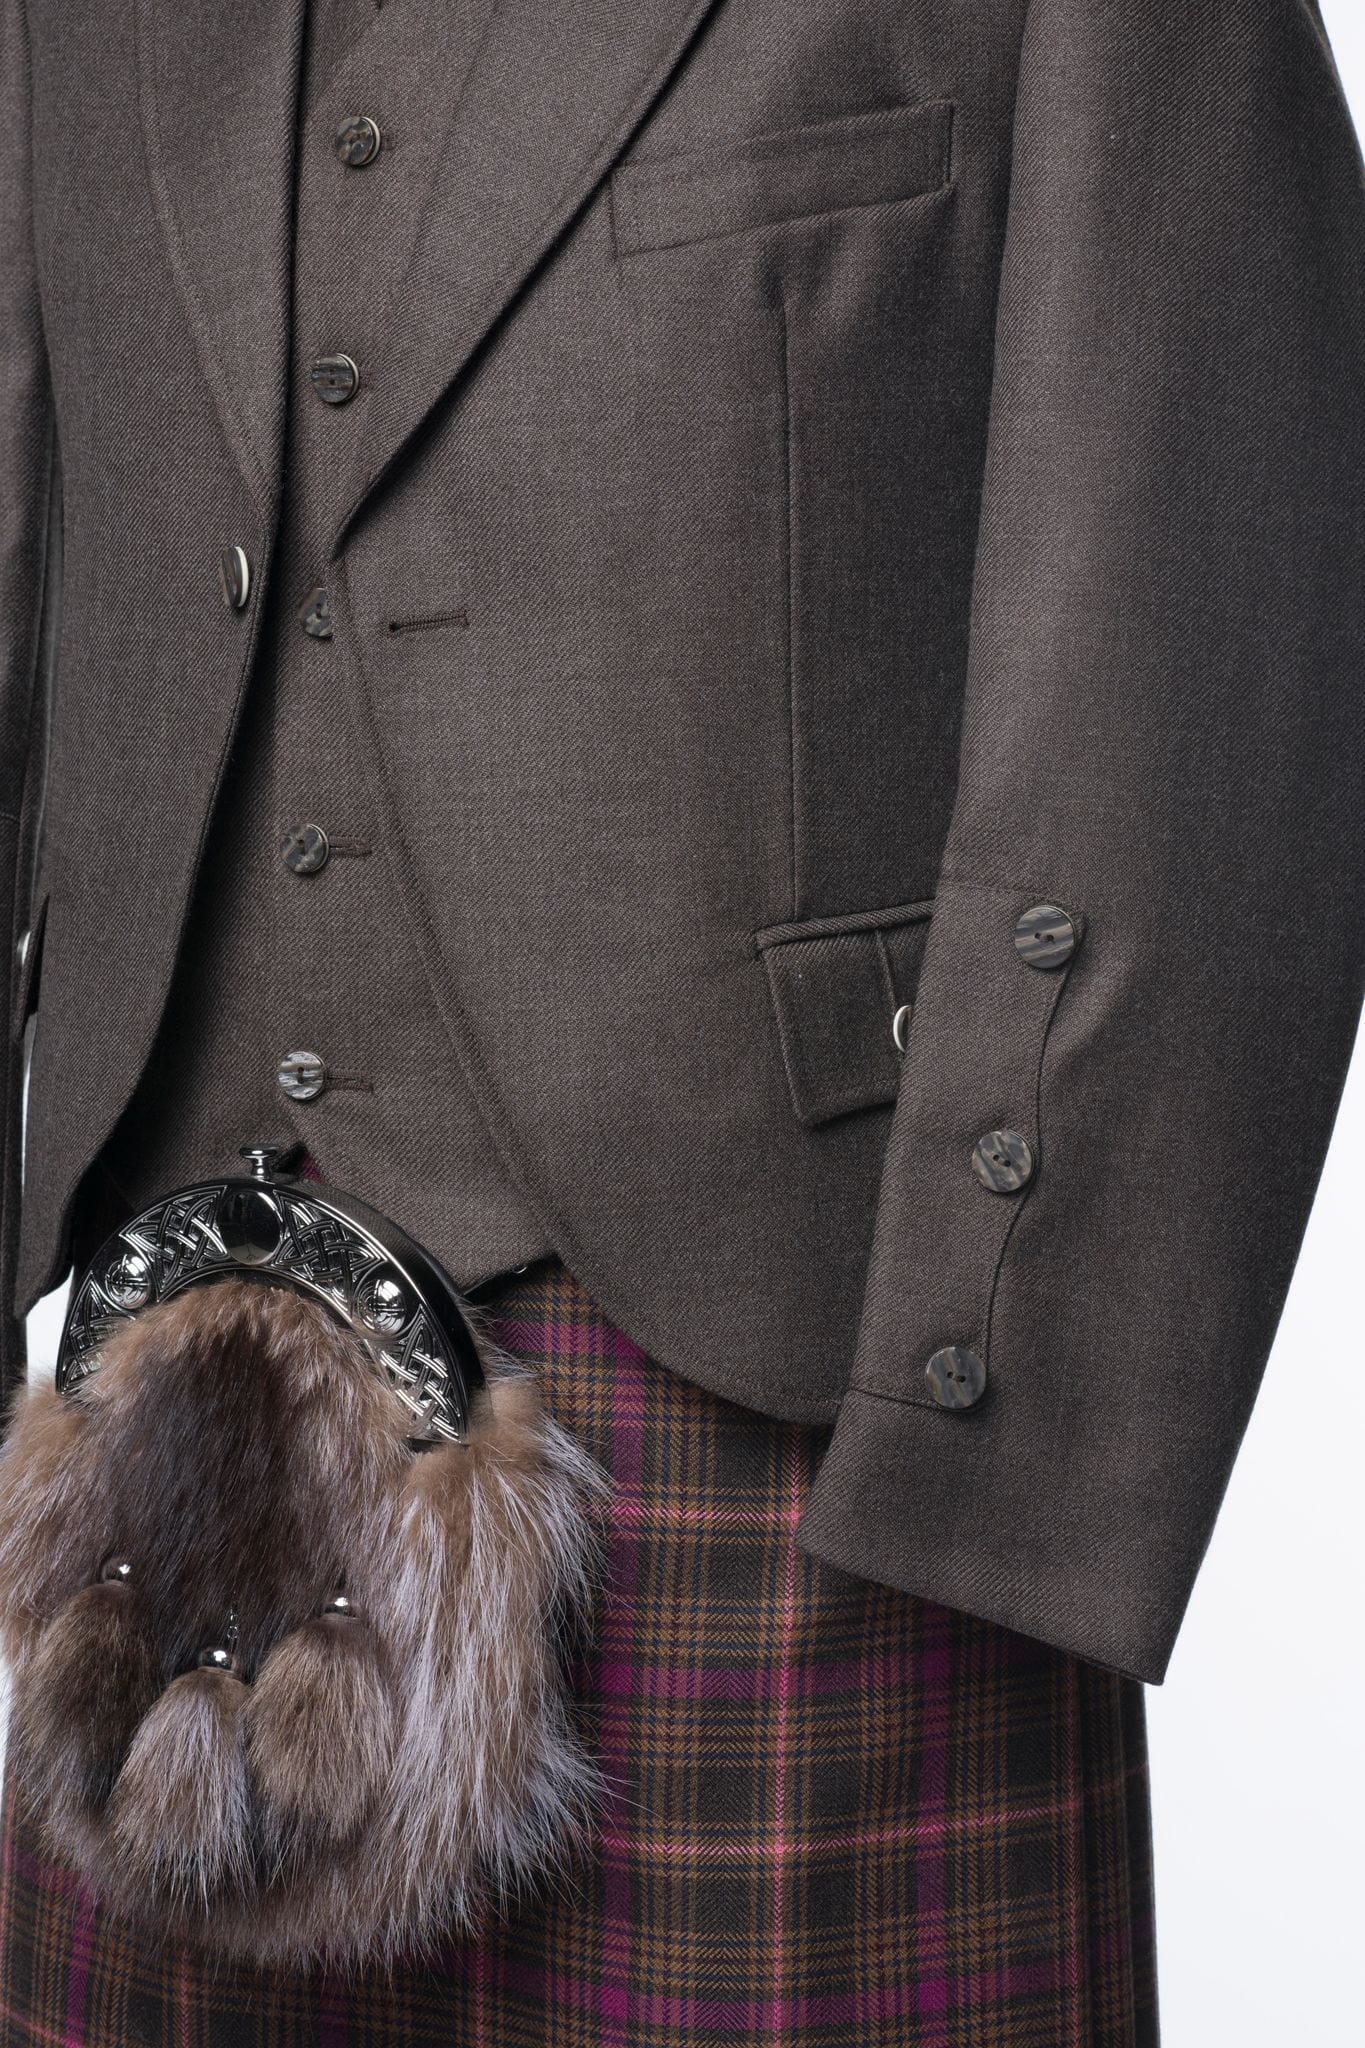 Brown Tweed Kilt Jacket and Waistcoat - MacGregor and MacDuff